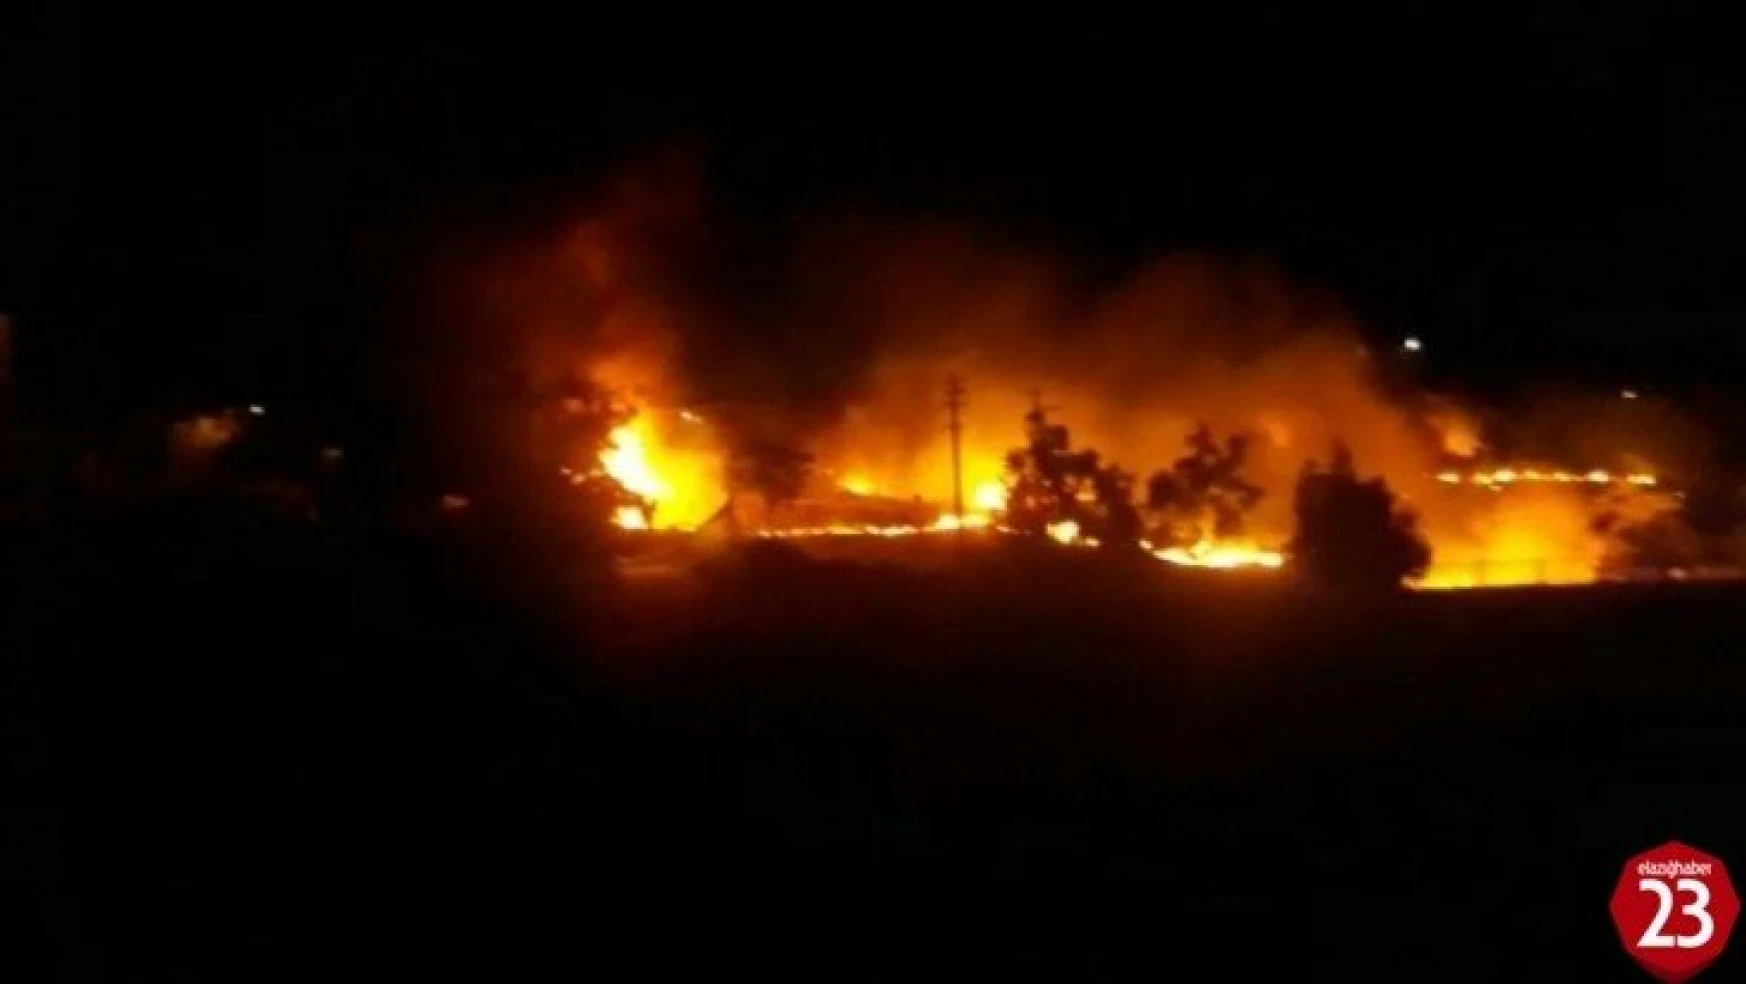 Keban'da korkutan yangın okula sıçramadan söndürüldü